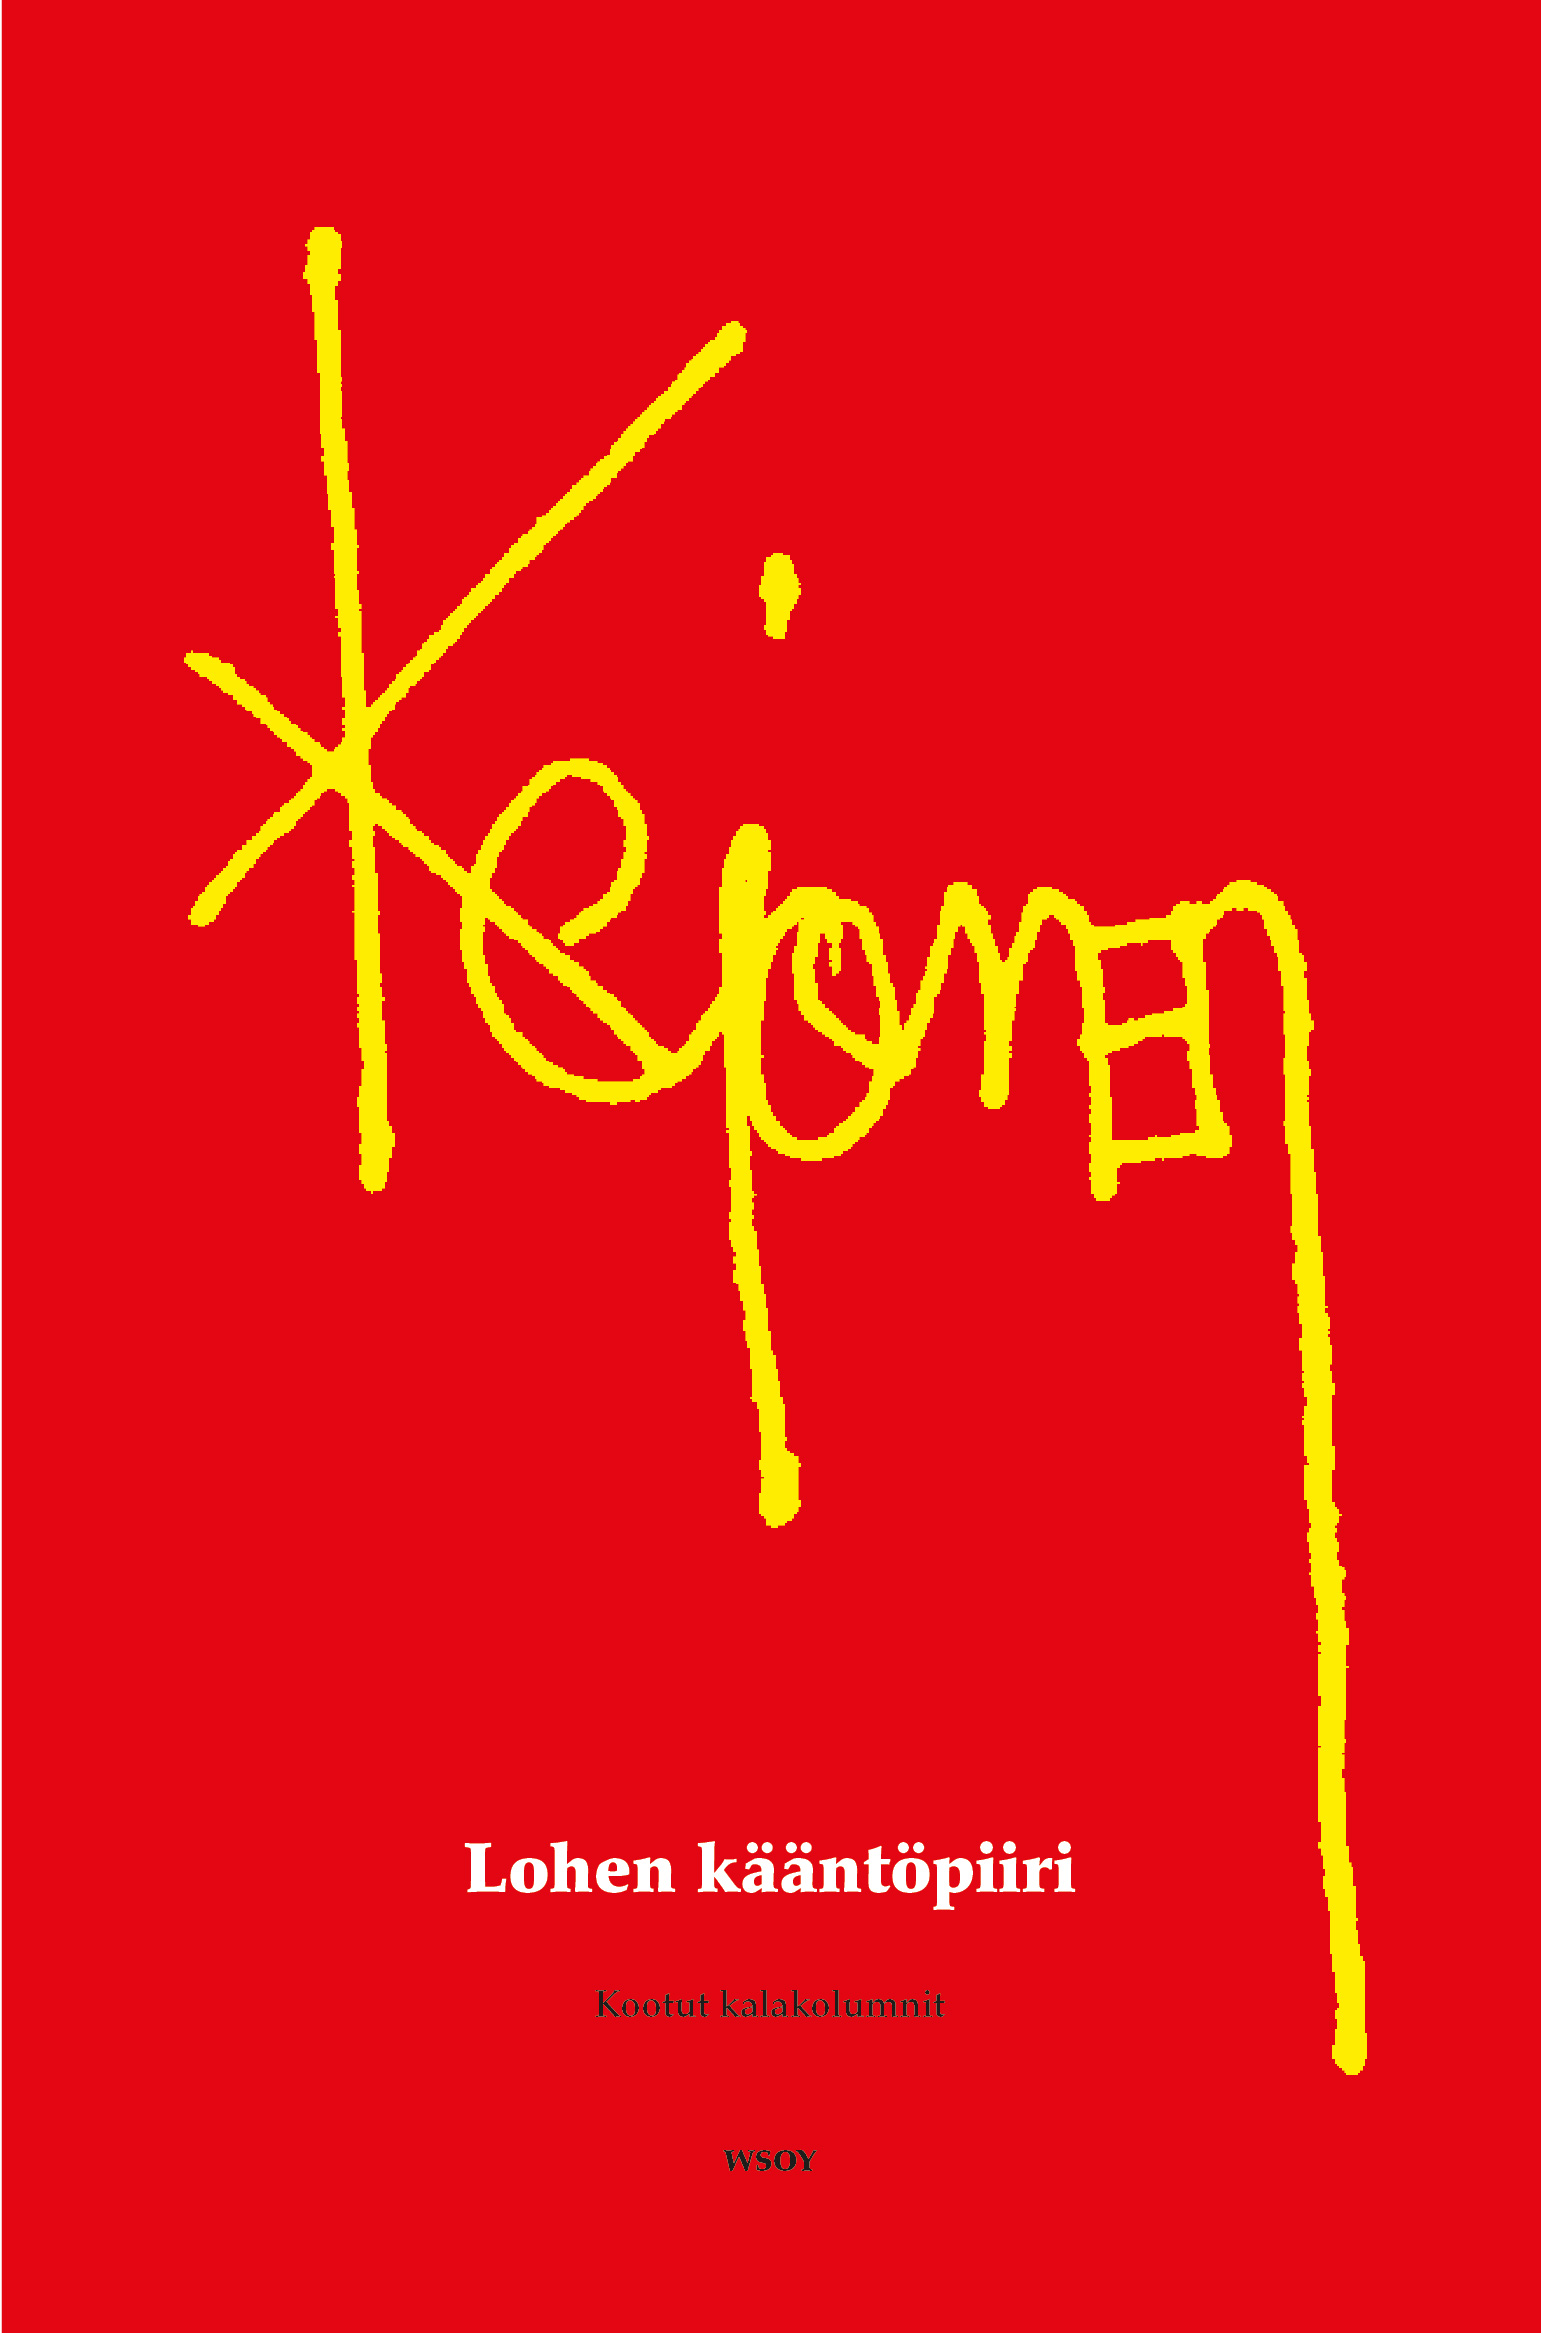 Kejonen, Pekka - Lohen kääntöpiiri: Kootut kalakolumnit, e-kirja